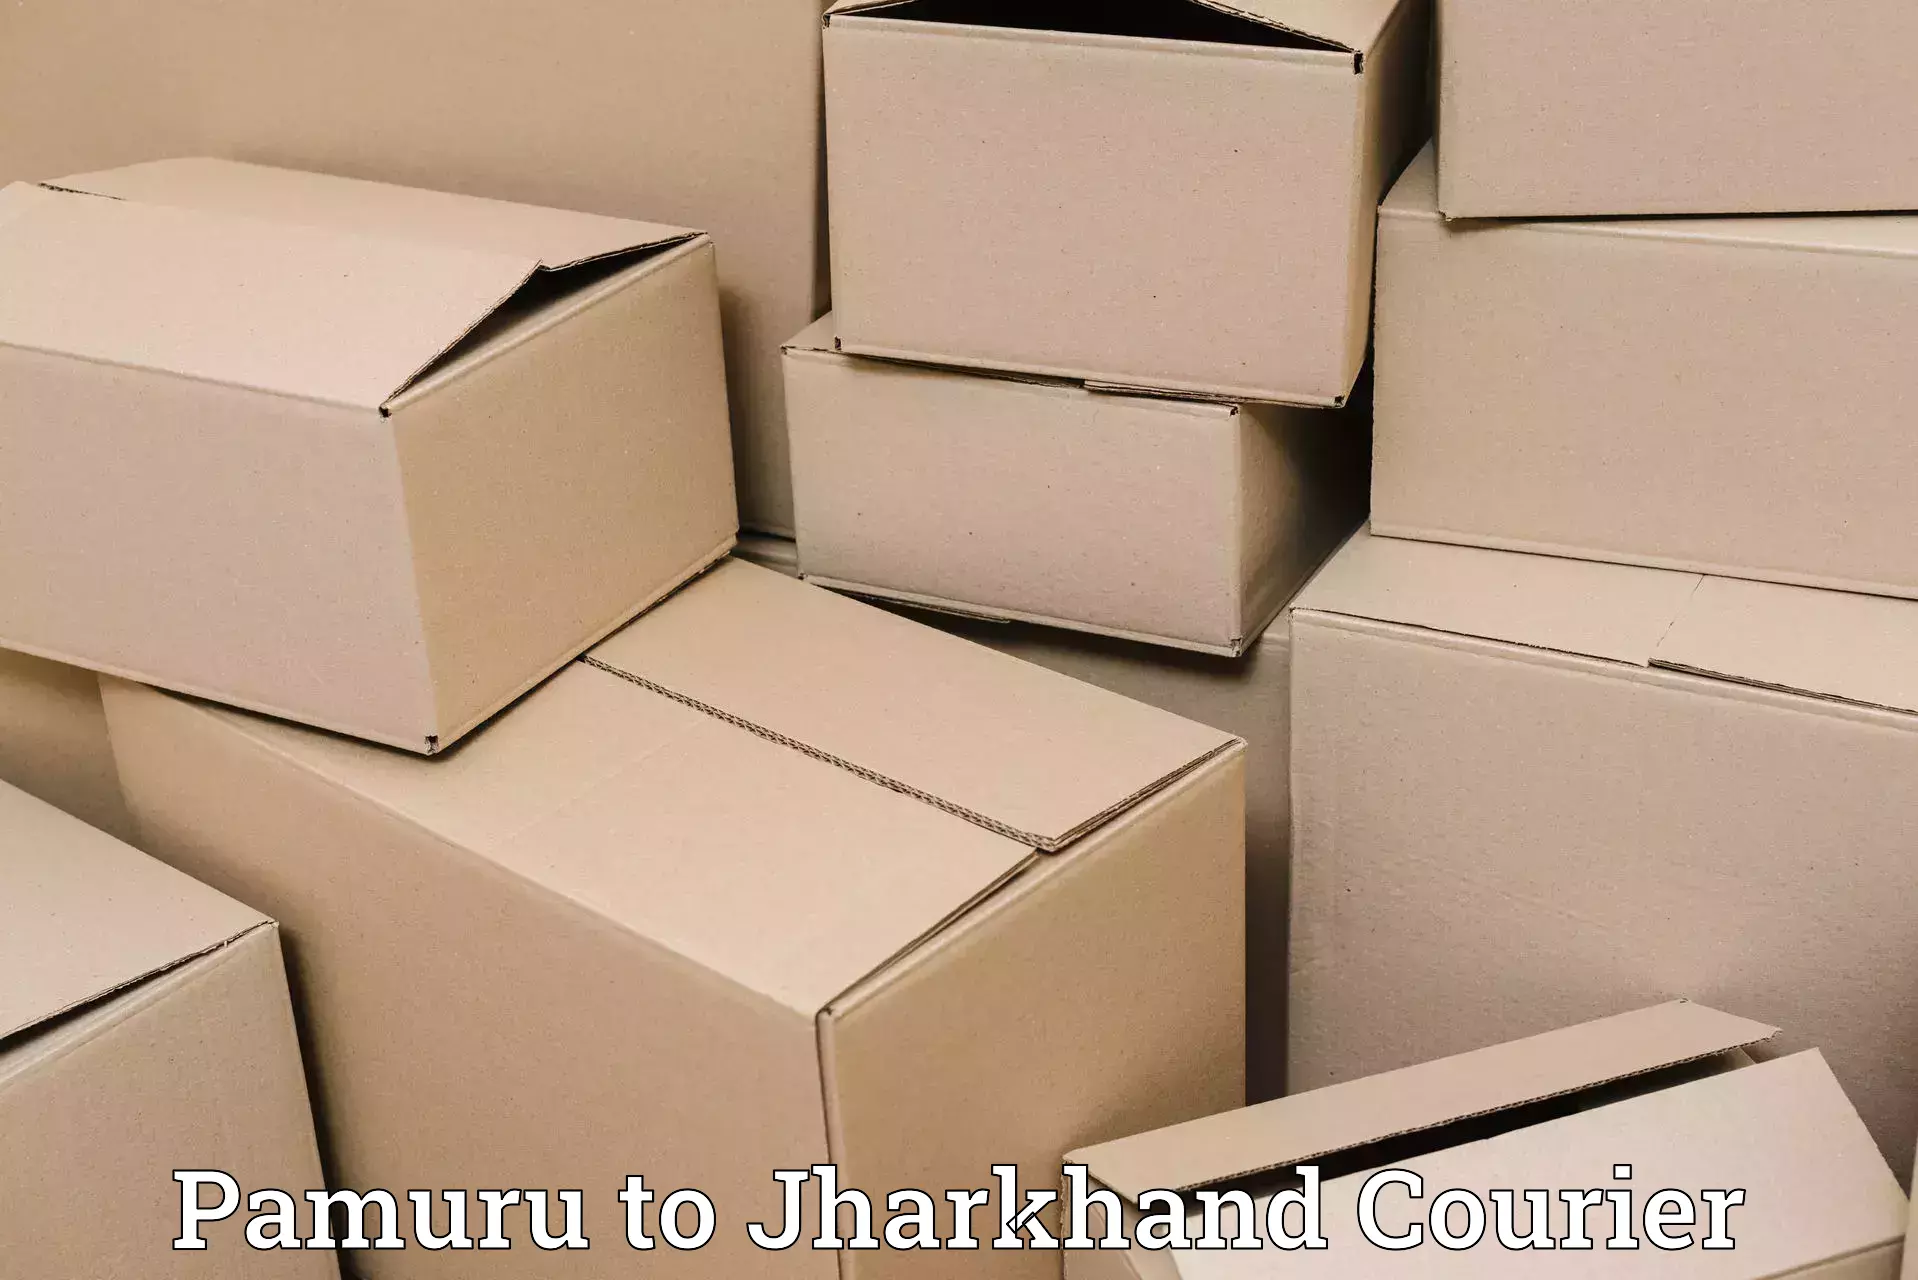 Seamless shipping service Pamuru to Jharkhand